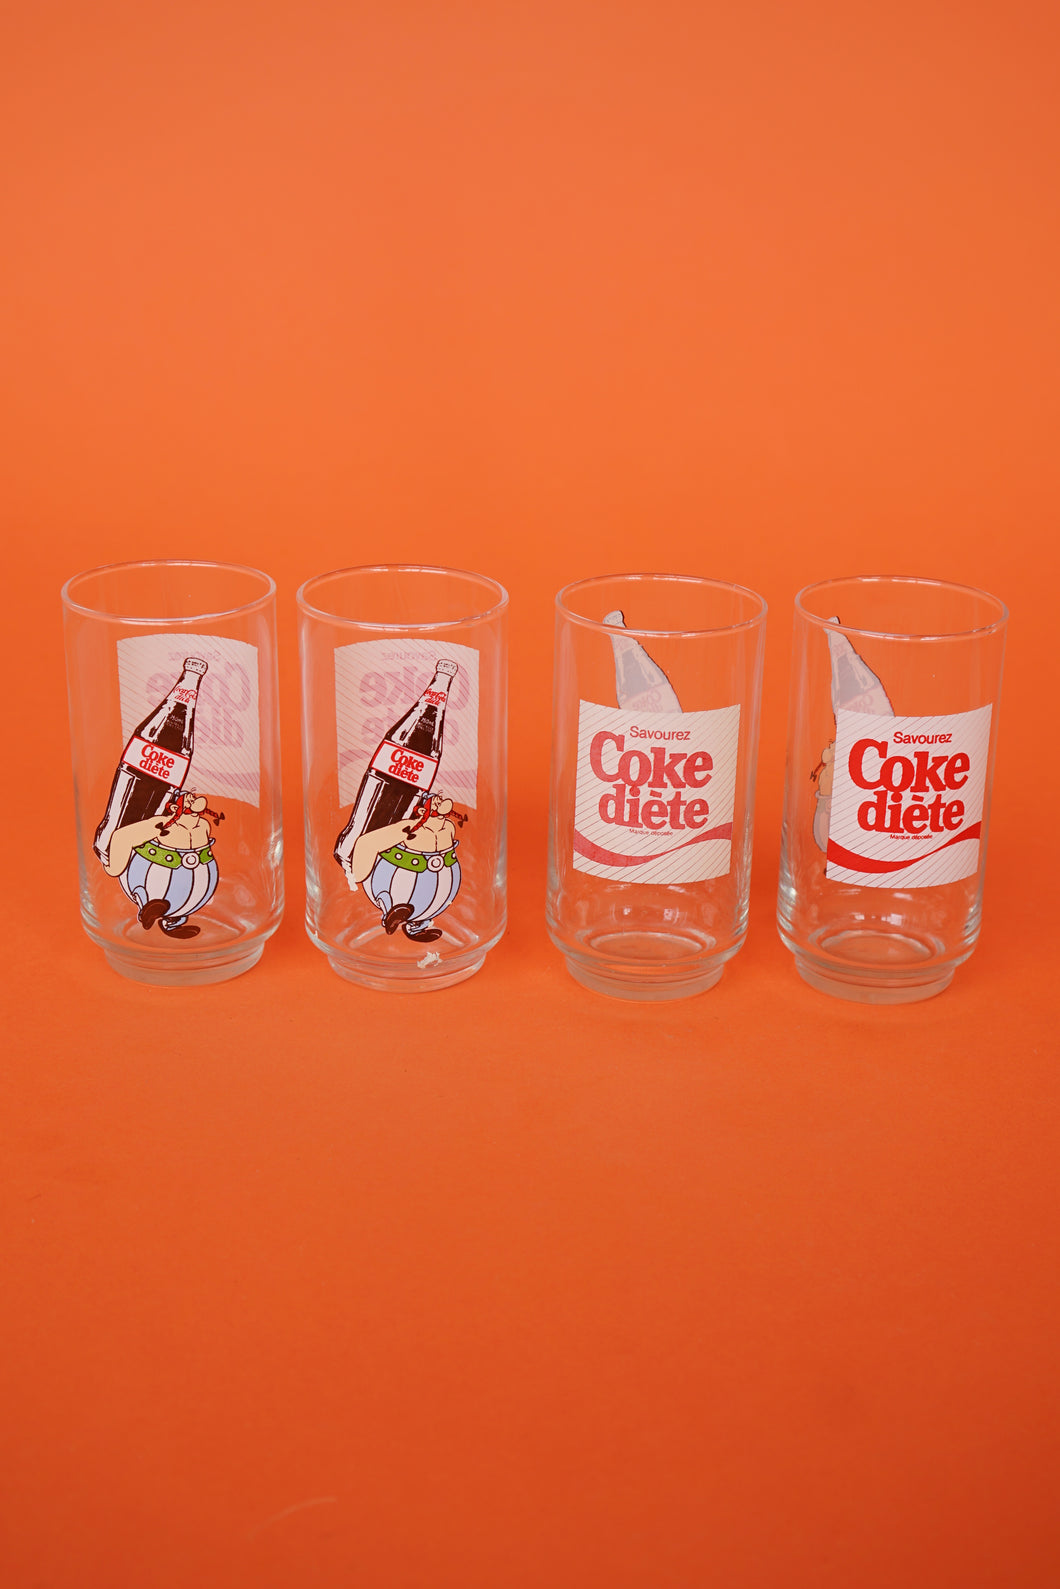 Coka cola collection glasses, Coke Diete Asterix and Obelix edition